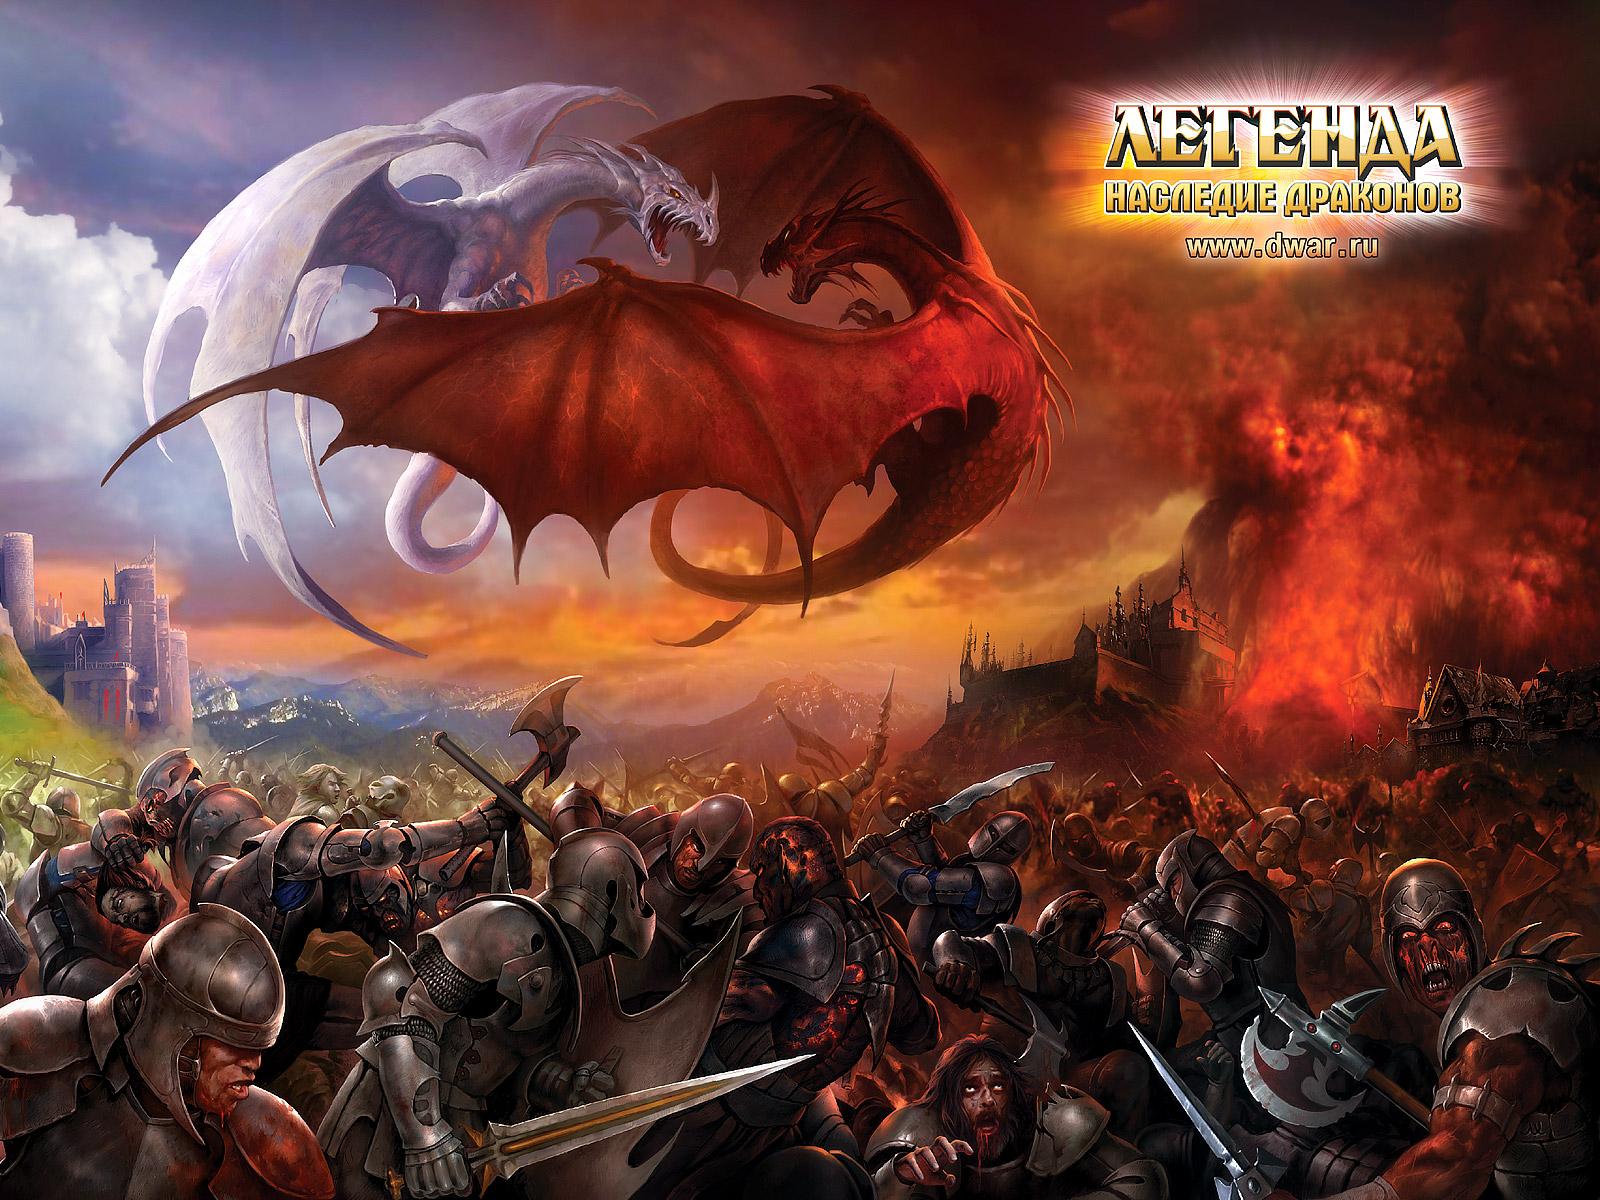 Immagini Legend: Legacy of the Dragons gioco 1600x1200 Videogiochi